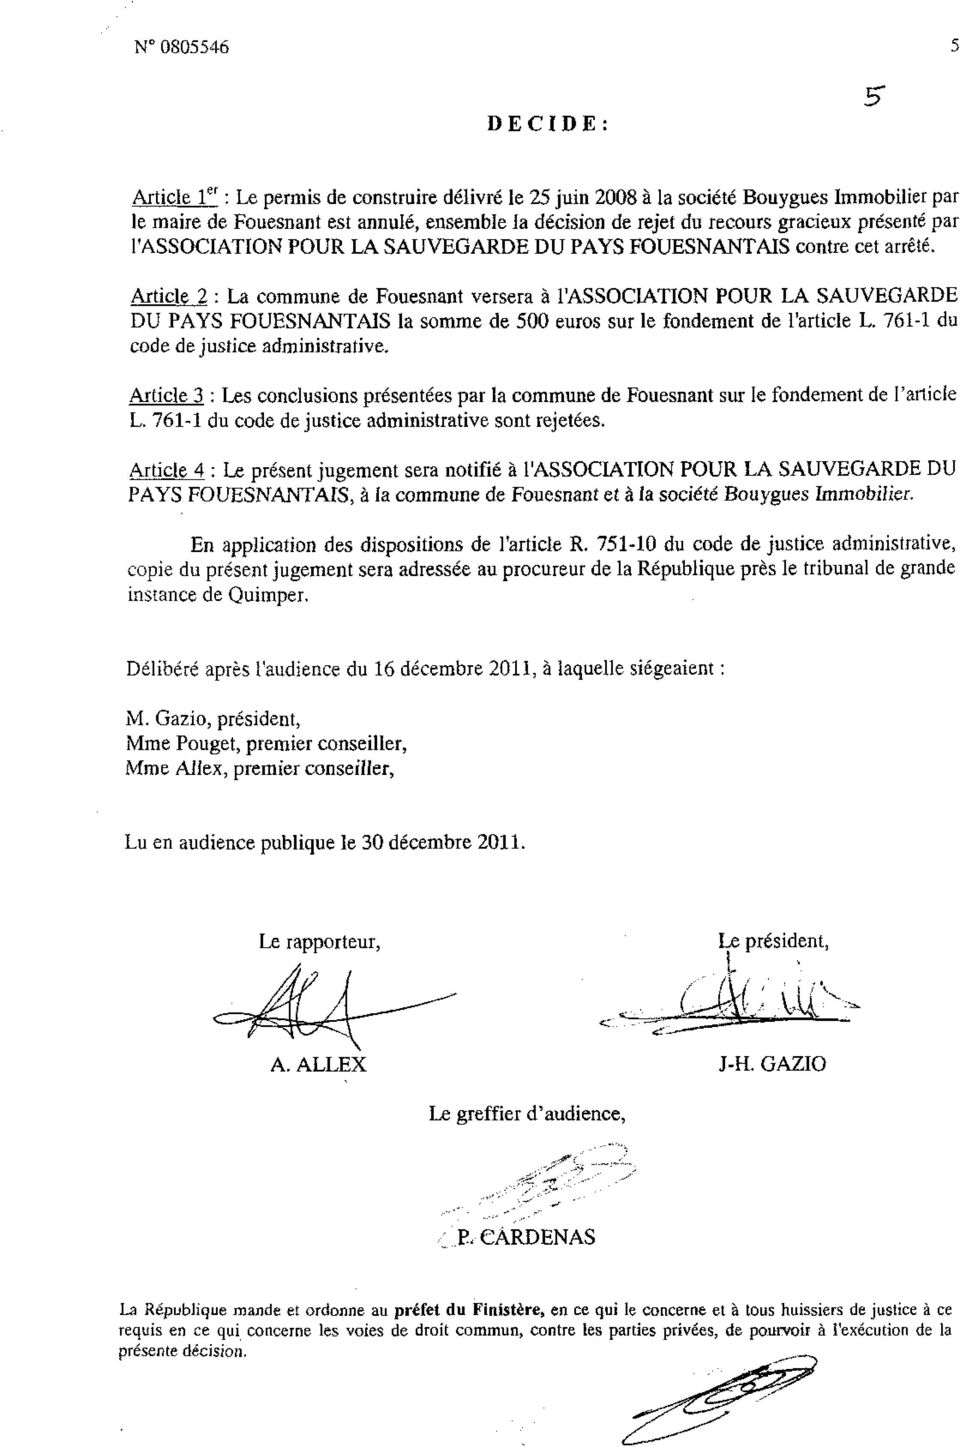 Article 2 : La commune de Fouesnant versera à l'association POUR LA SAUVEGARDE DU PAYS FOUESNANTAIS la somme de 500 euros sur le fondement de l'article L. 761-1 du code de justice administrative.